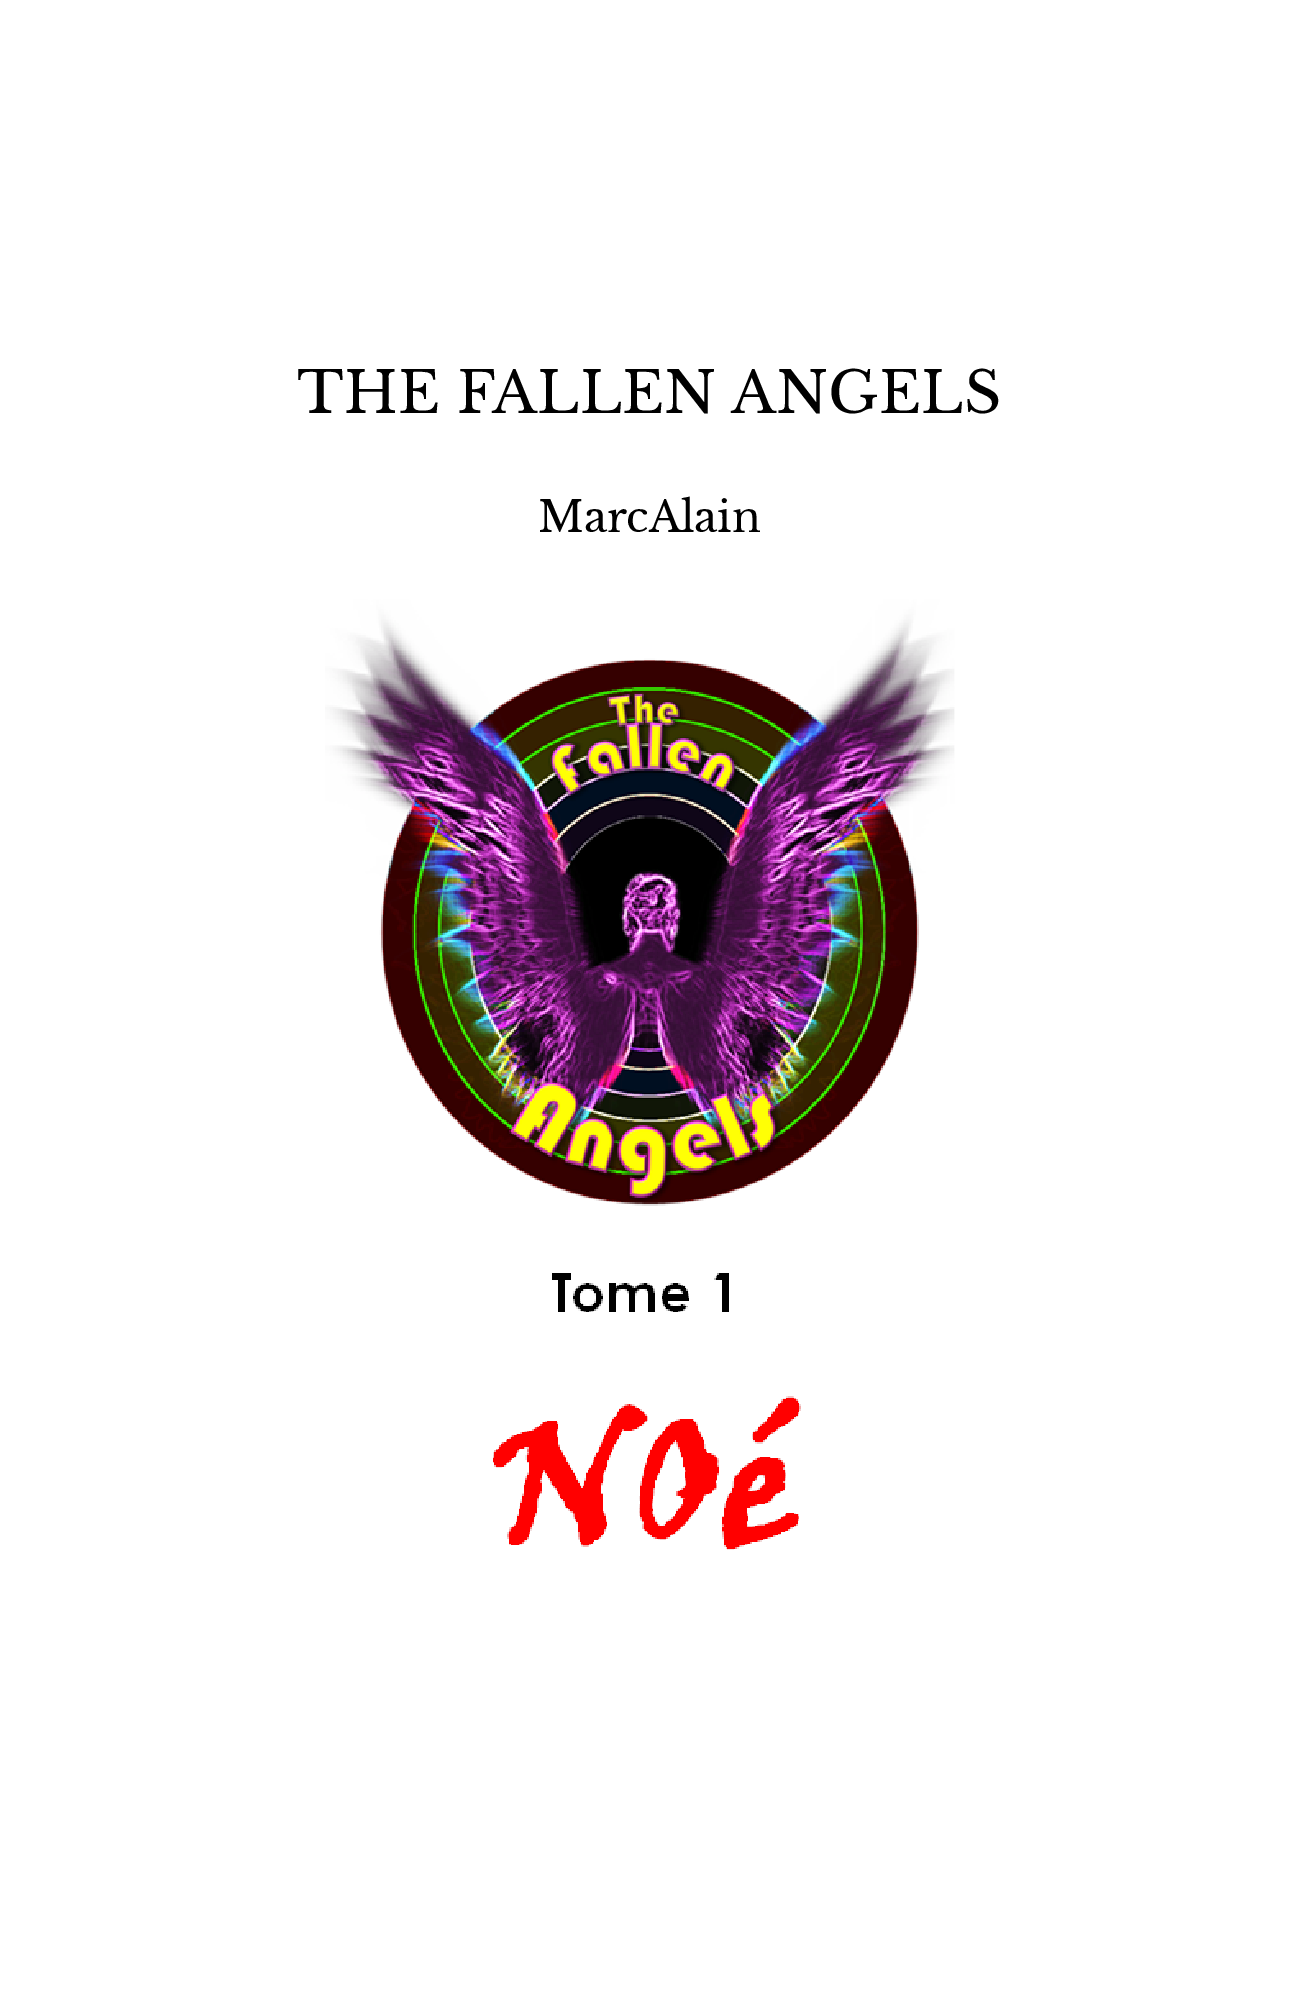 THE FALLEN ANGELS